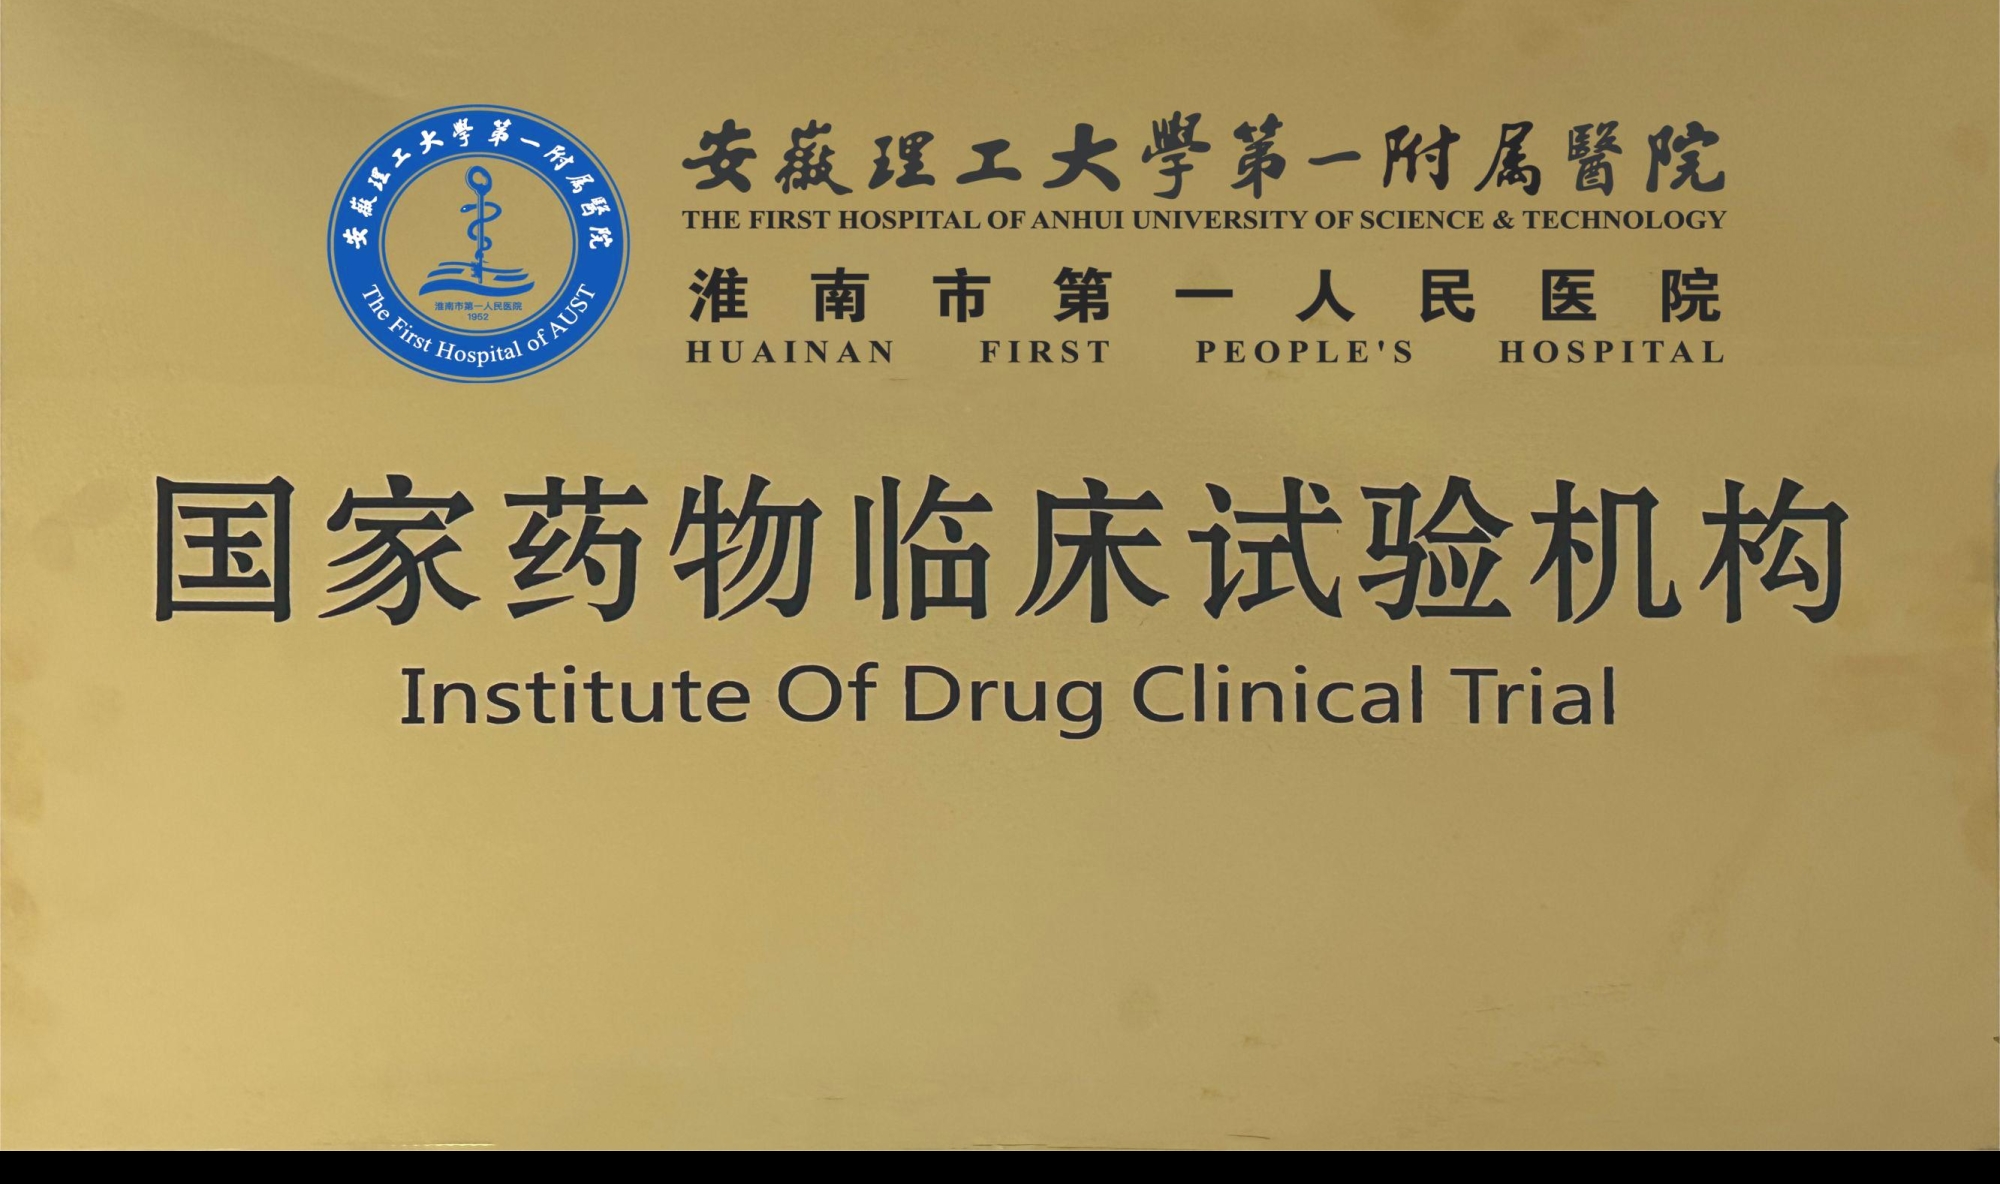 10、国家药物临床试验机构.jpg